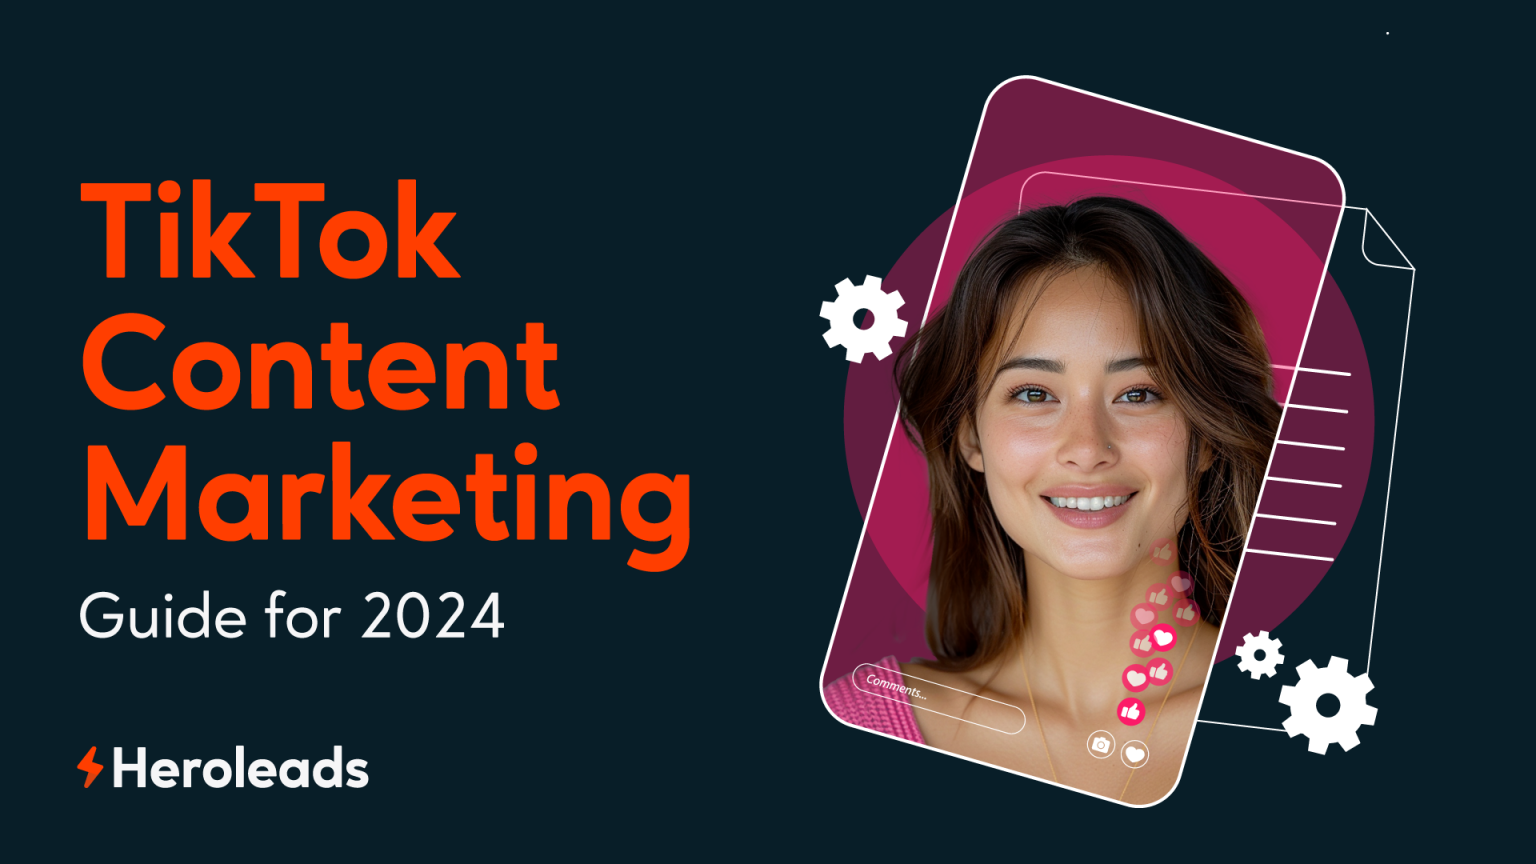 Blog - TikTok Content Marketing Guide for 2024